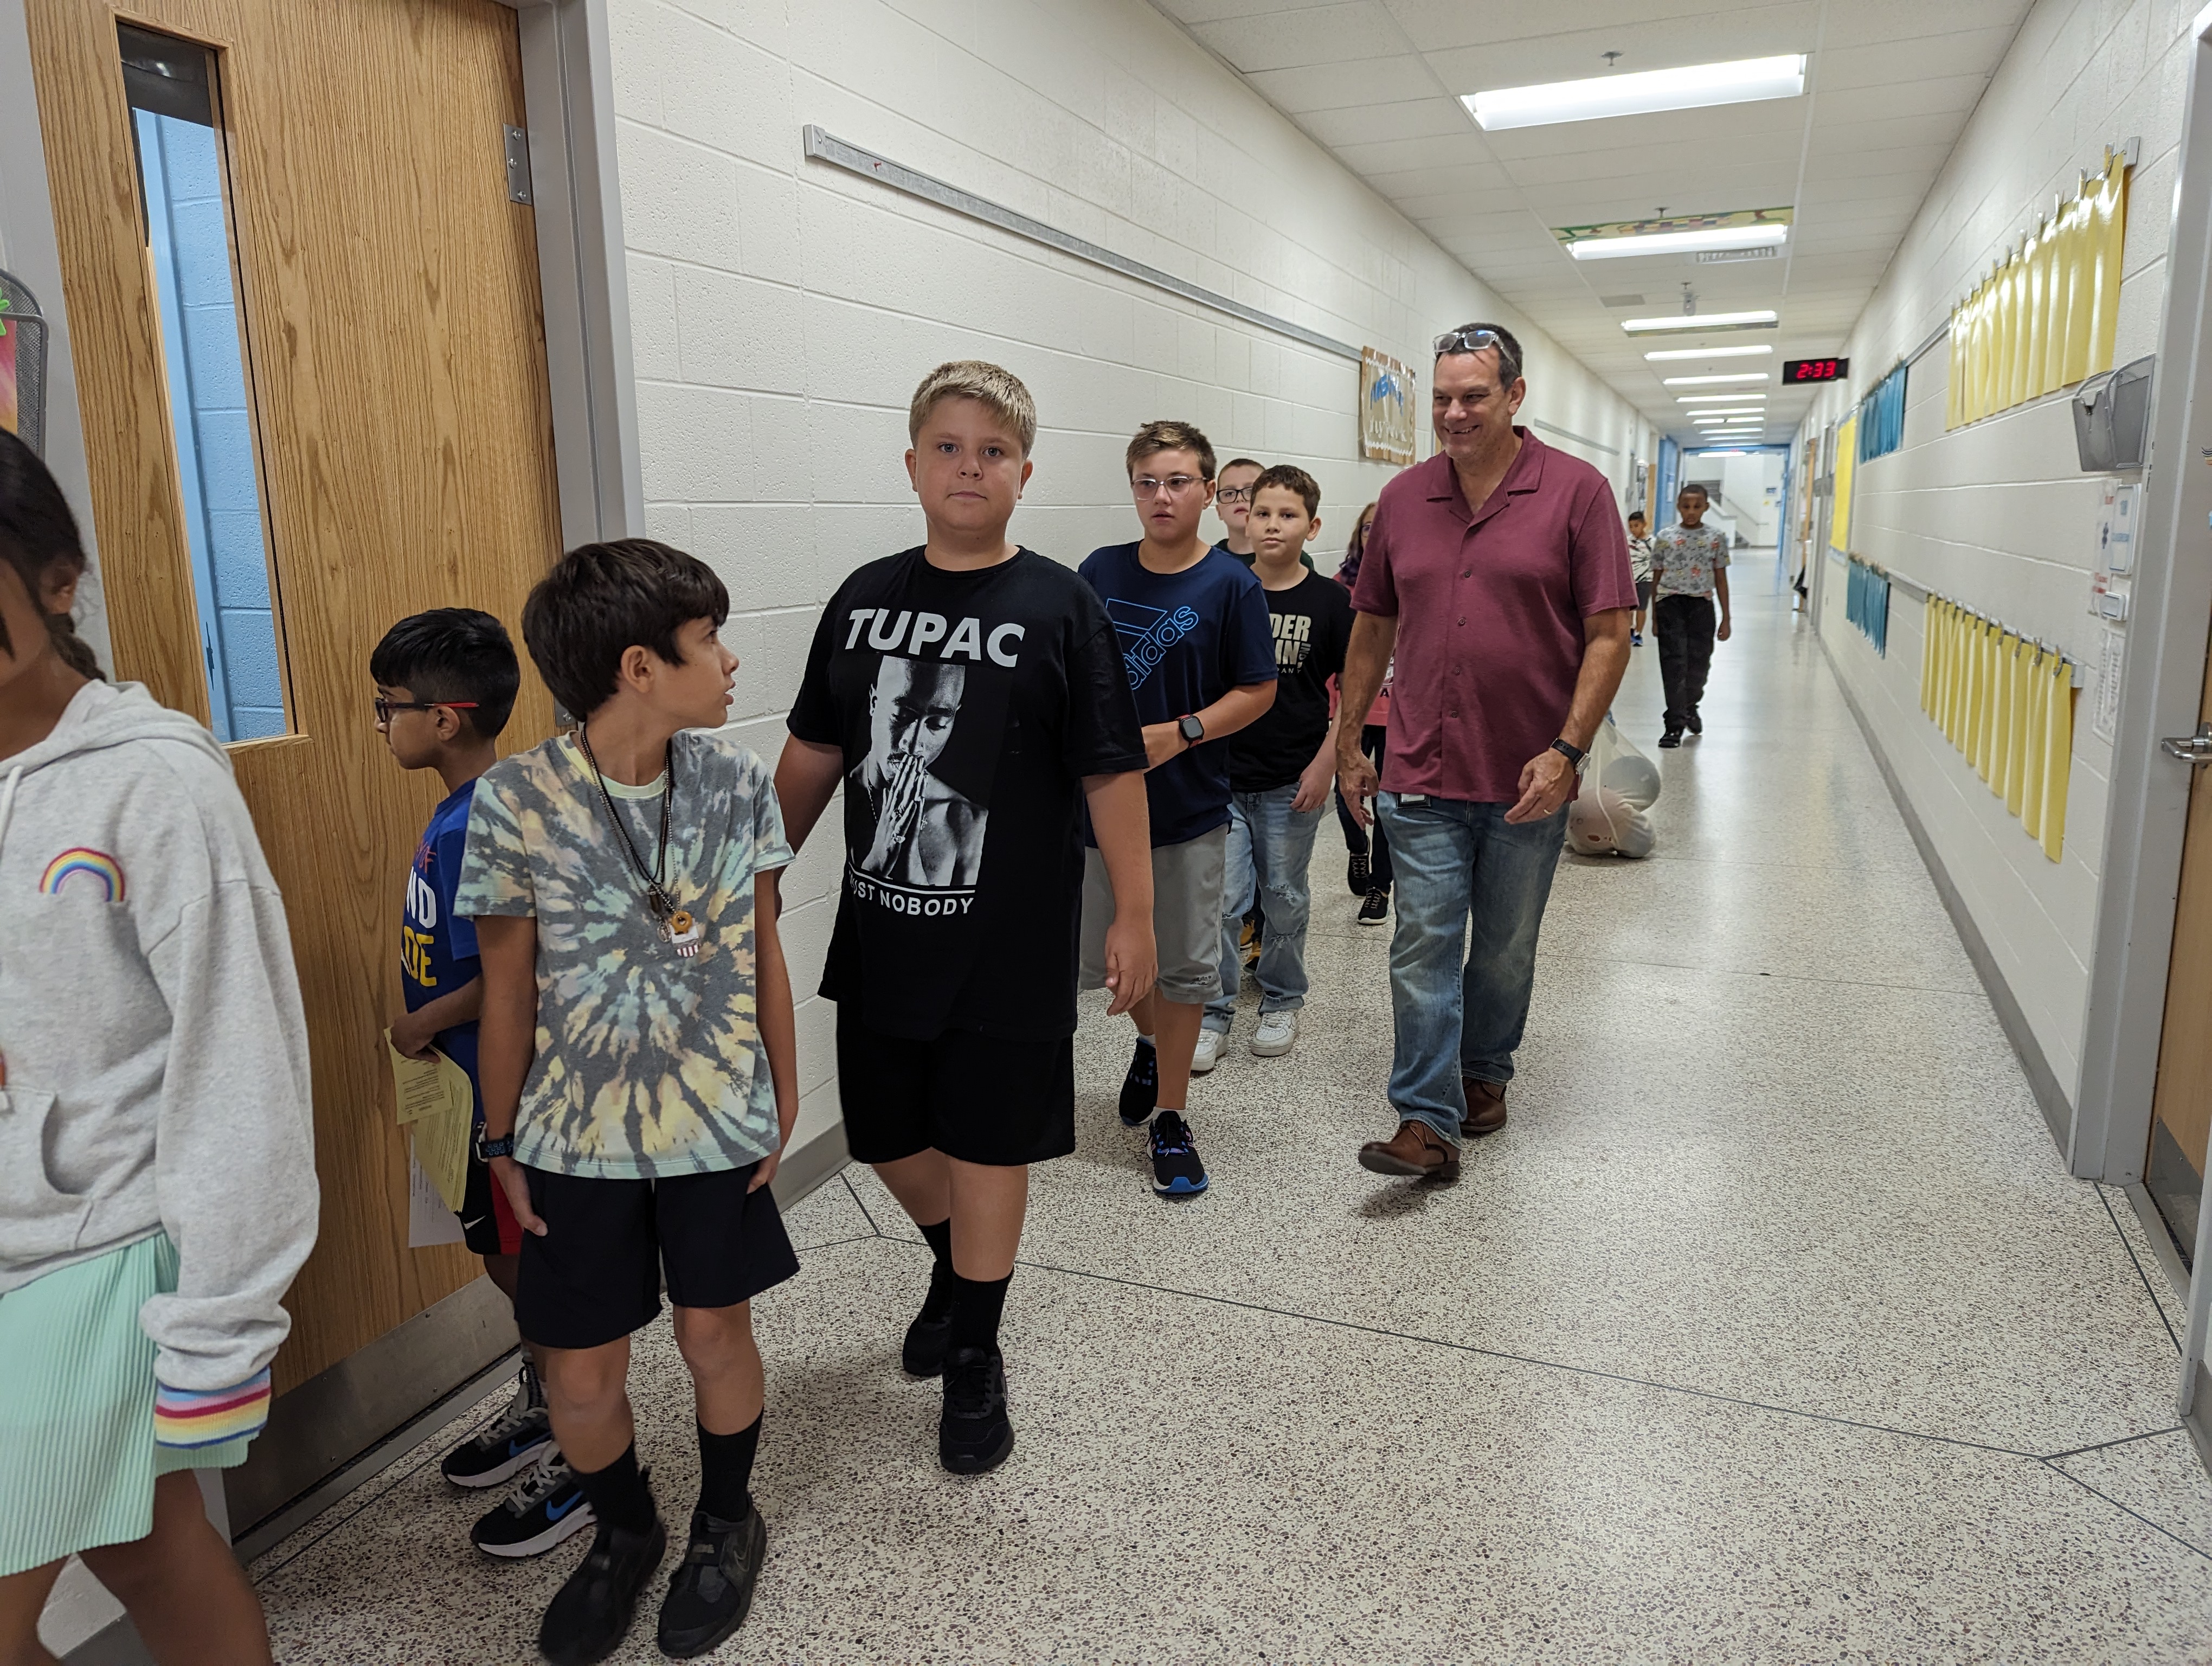 5th grade students walking to recess.